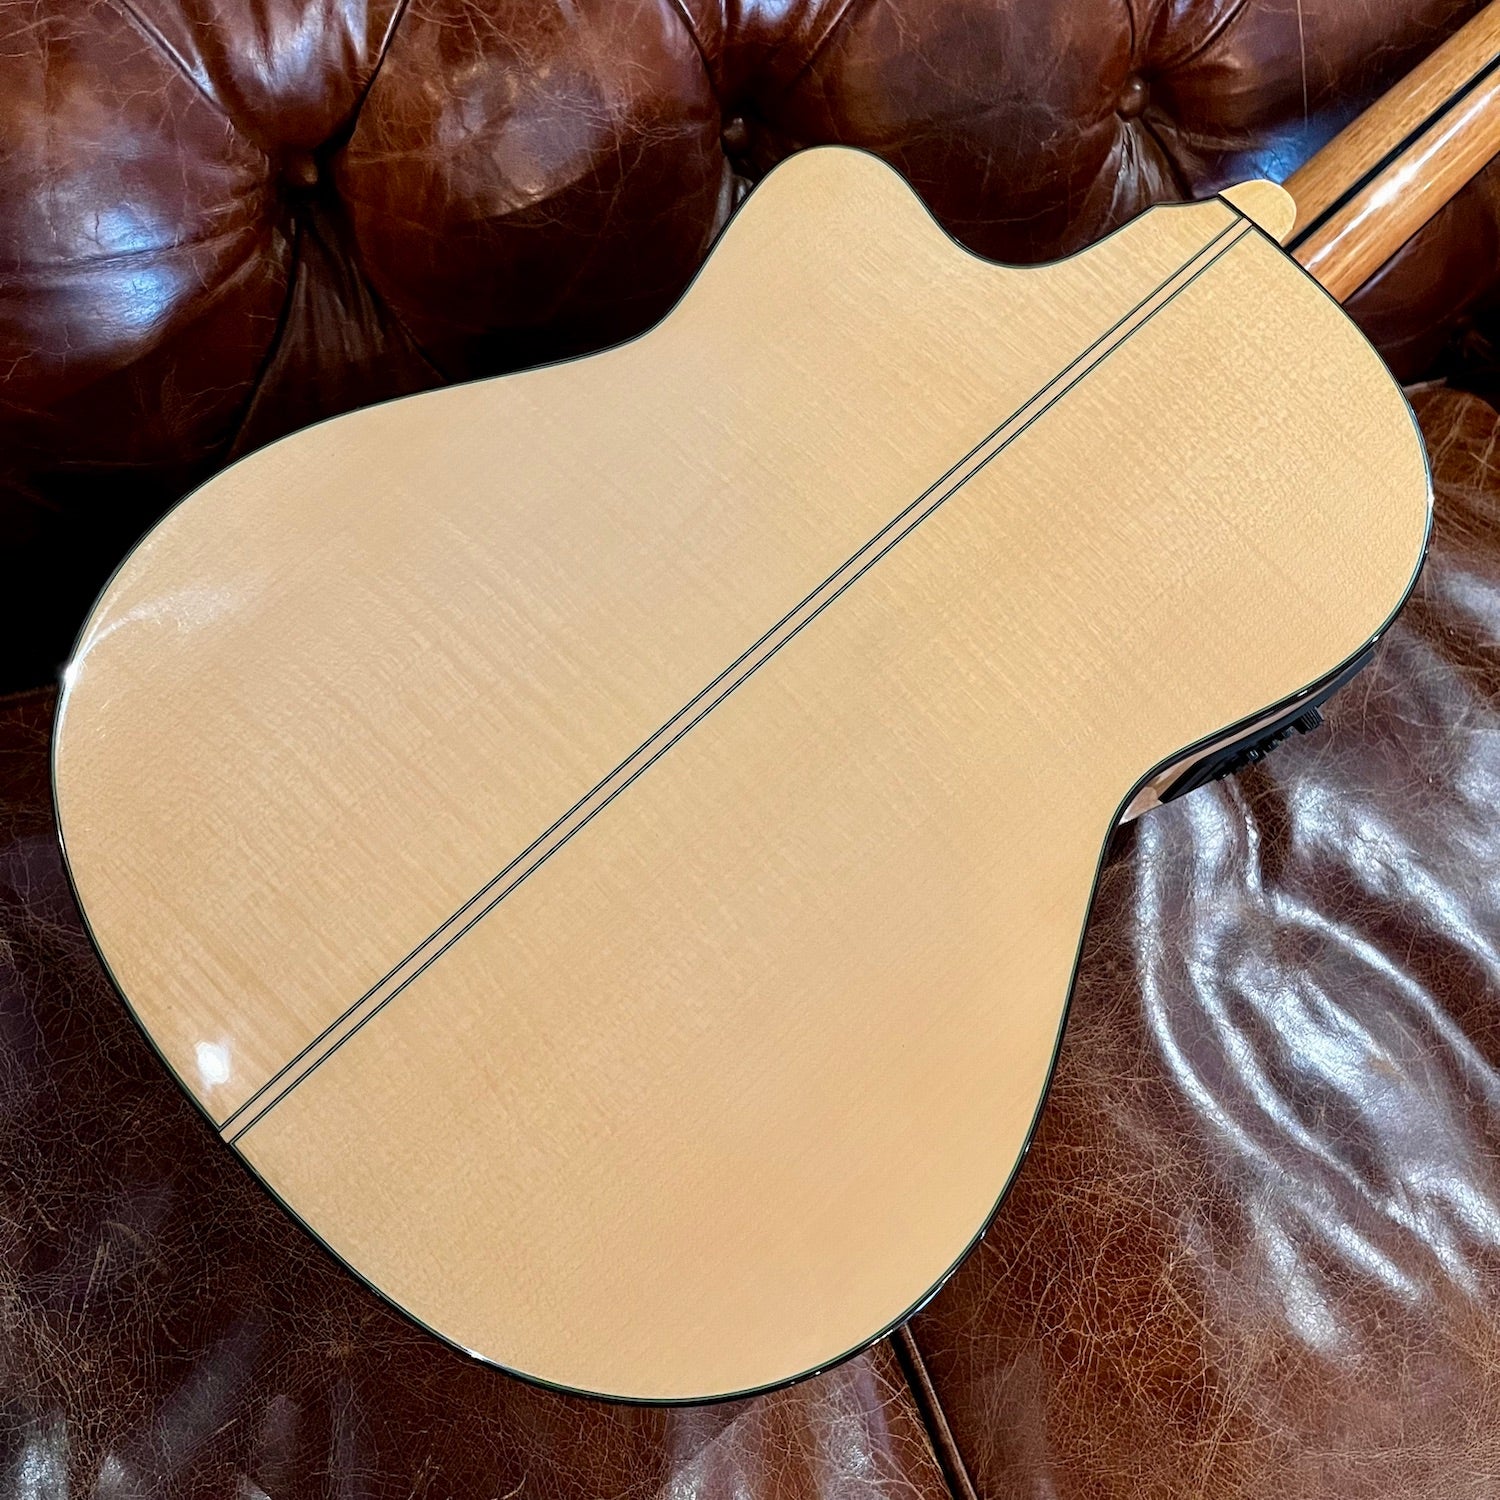 Altamira L'Orfeo Classical Guitar German Spruce/Maple Cutaway Pickup w/Case